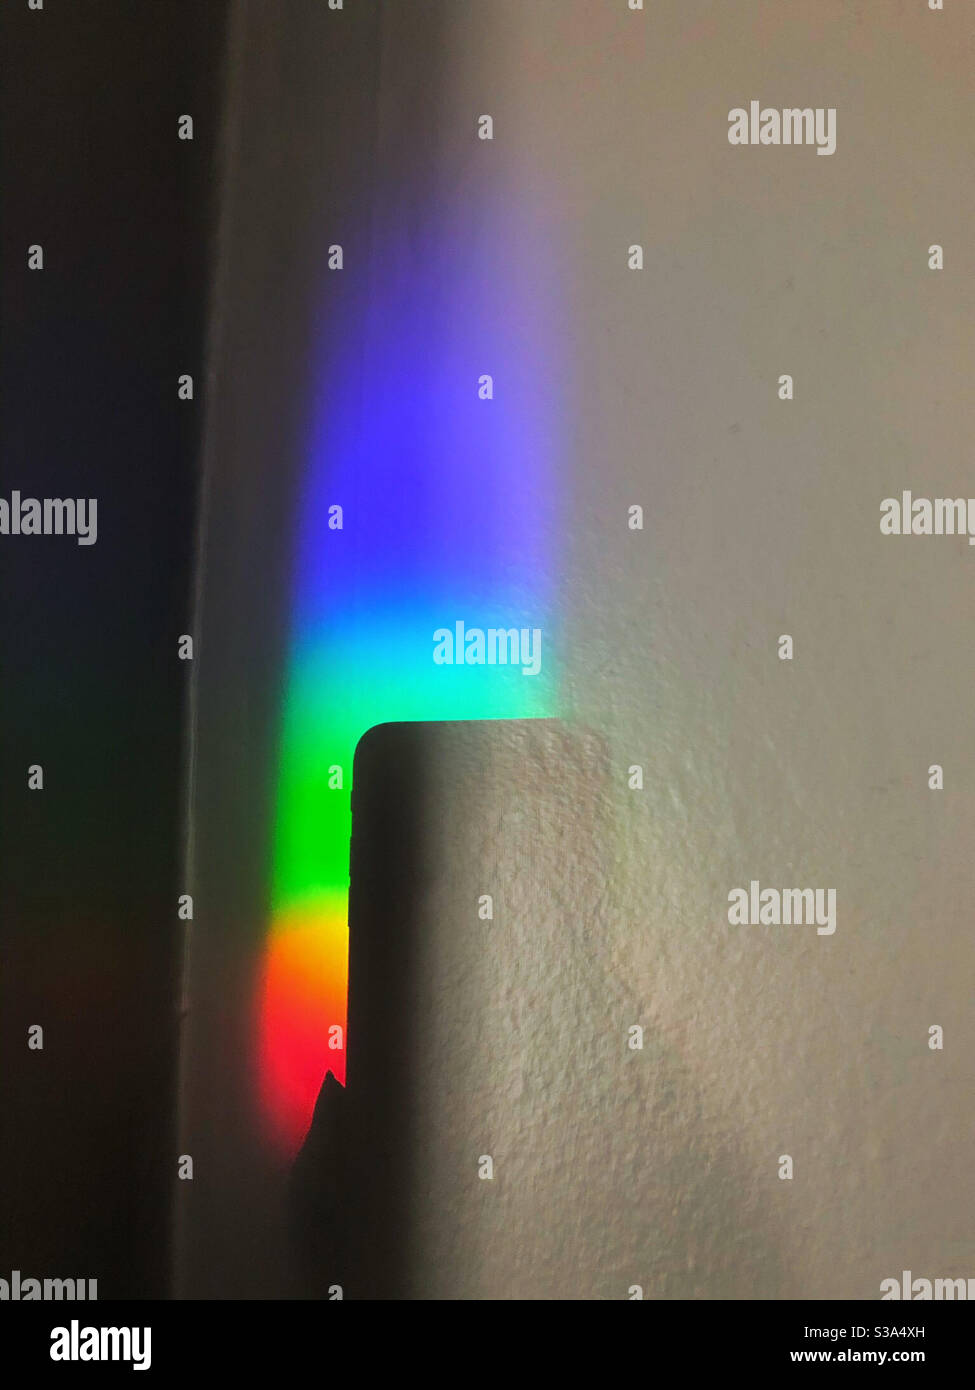 La donna fotografa il prisma dell'arcobaleno utilizzando la fotocamera dello smartphone, mostrata dall'ombra, all'interno della casa Foto Stock